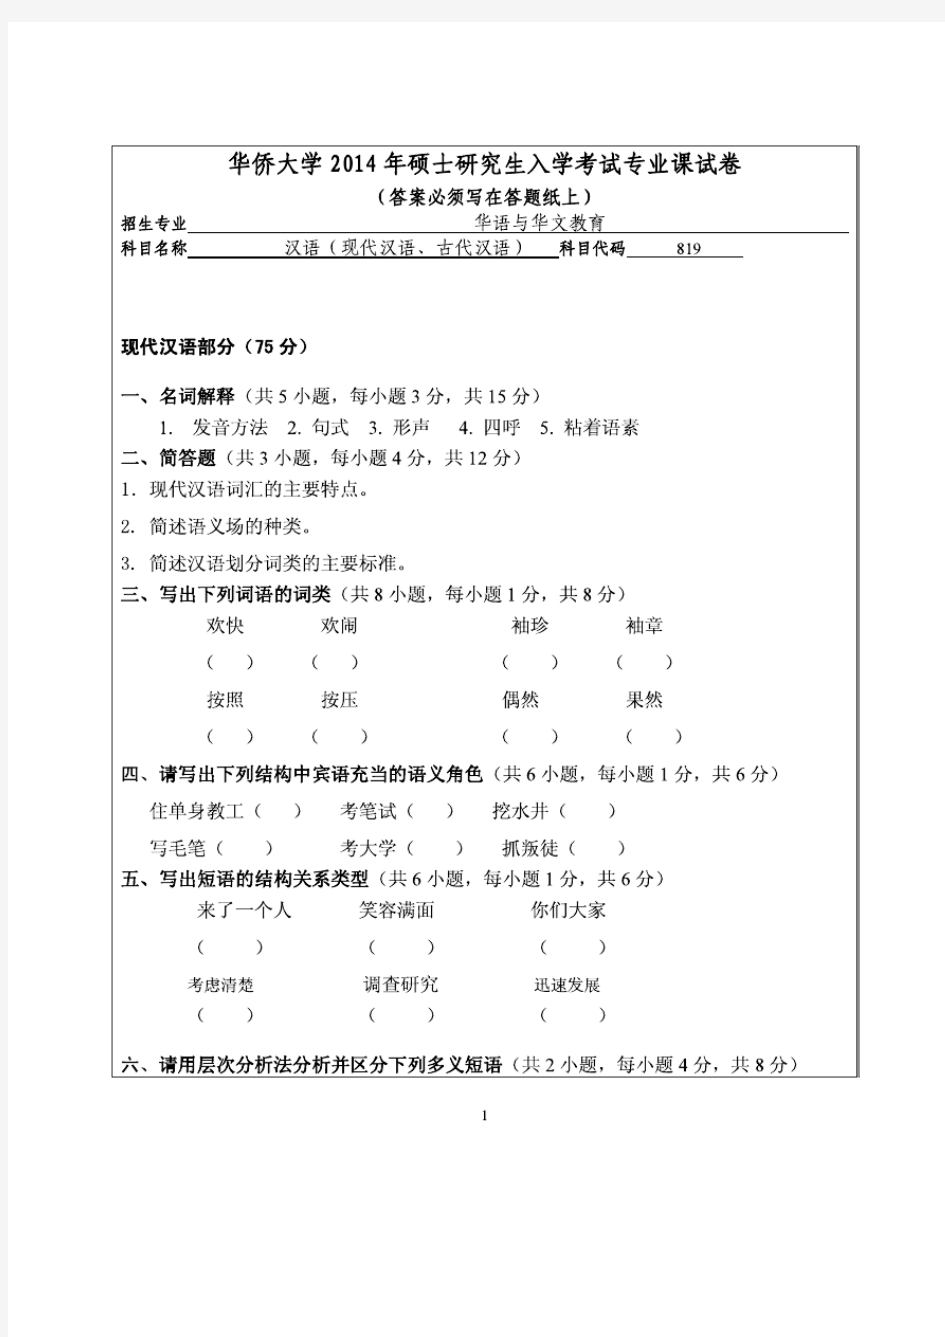 华侨大学2014年《819汉语(现代汉语、古代汉语)》考研专业课真题试卷